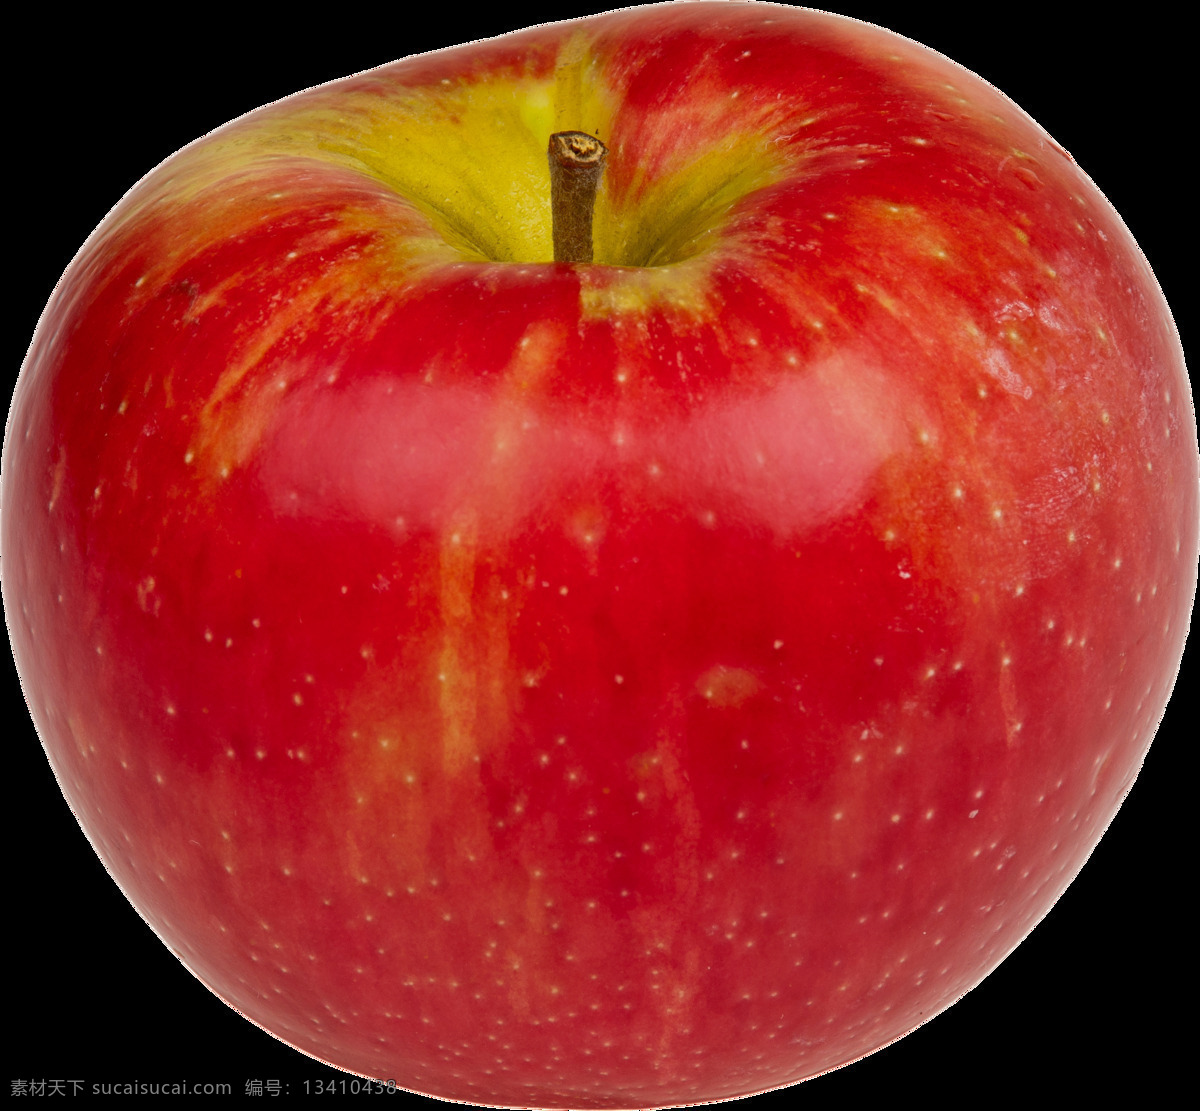 好看 红苹果 免 抠 透明 图 层 青苹果 苹果卡通图片 苹果logo 苹果简笔画 壁纸高清 大苹果 苹果梨树 苹果 苹果商标 金毛苹果 青苹果榨汁